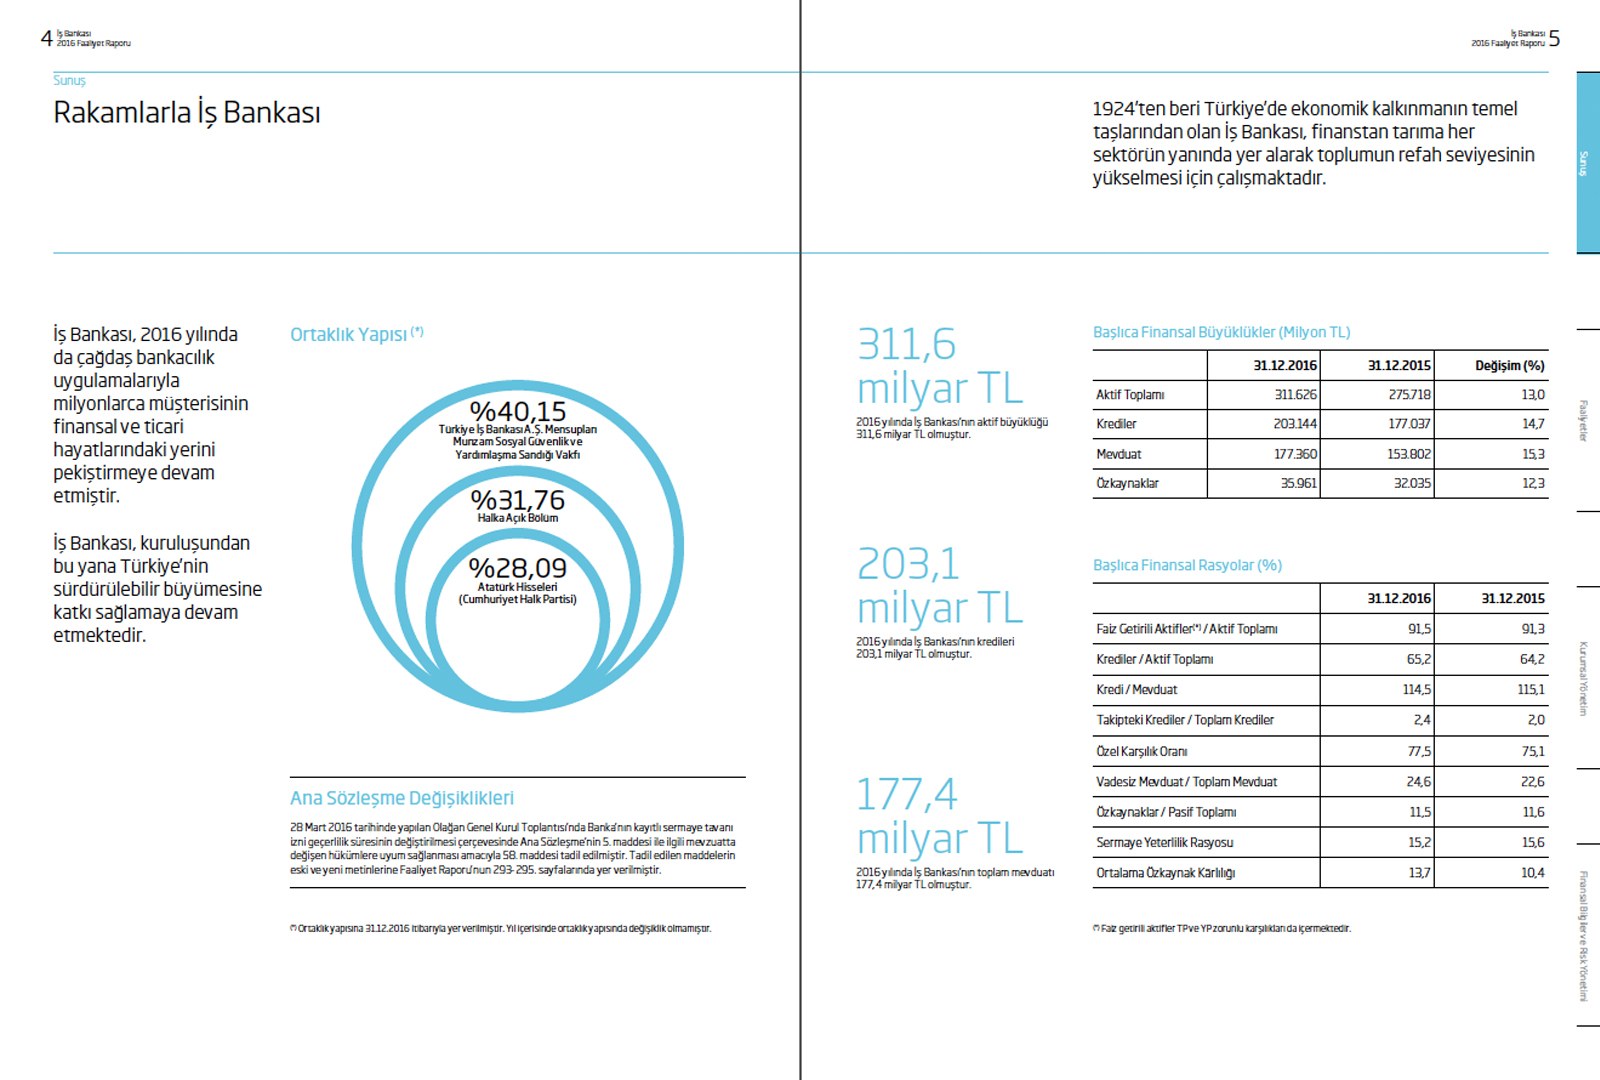 İŞ BANKASI / 2016 Faaliyet Raporu / 2016 Annual Report